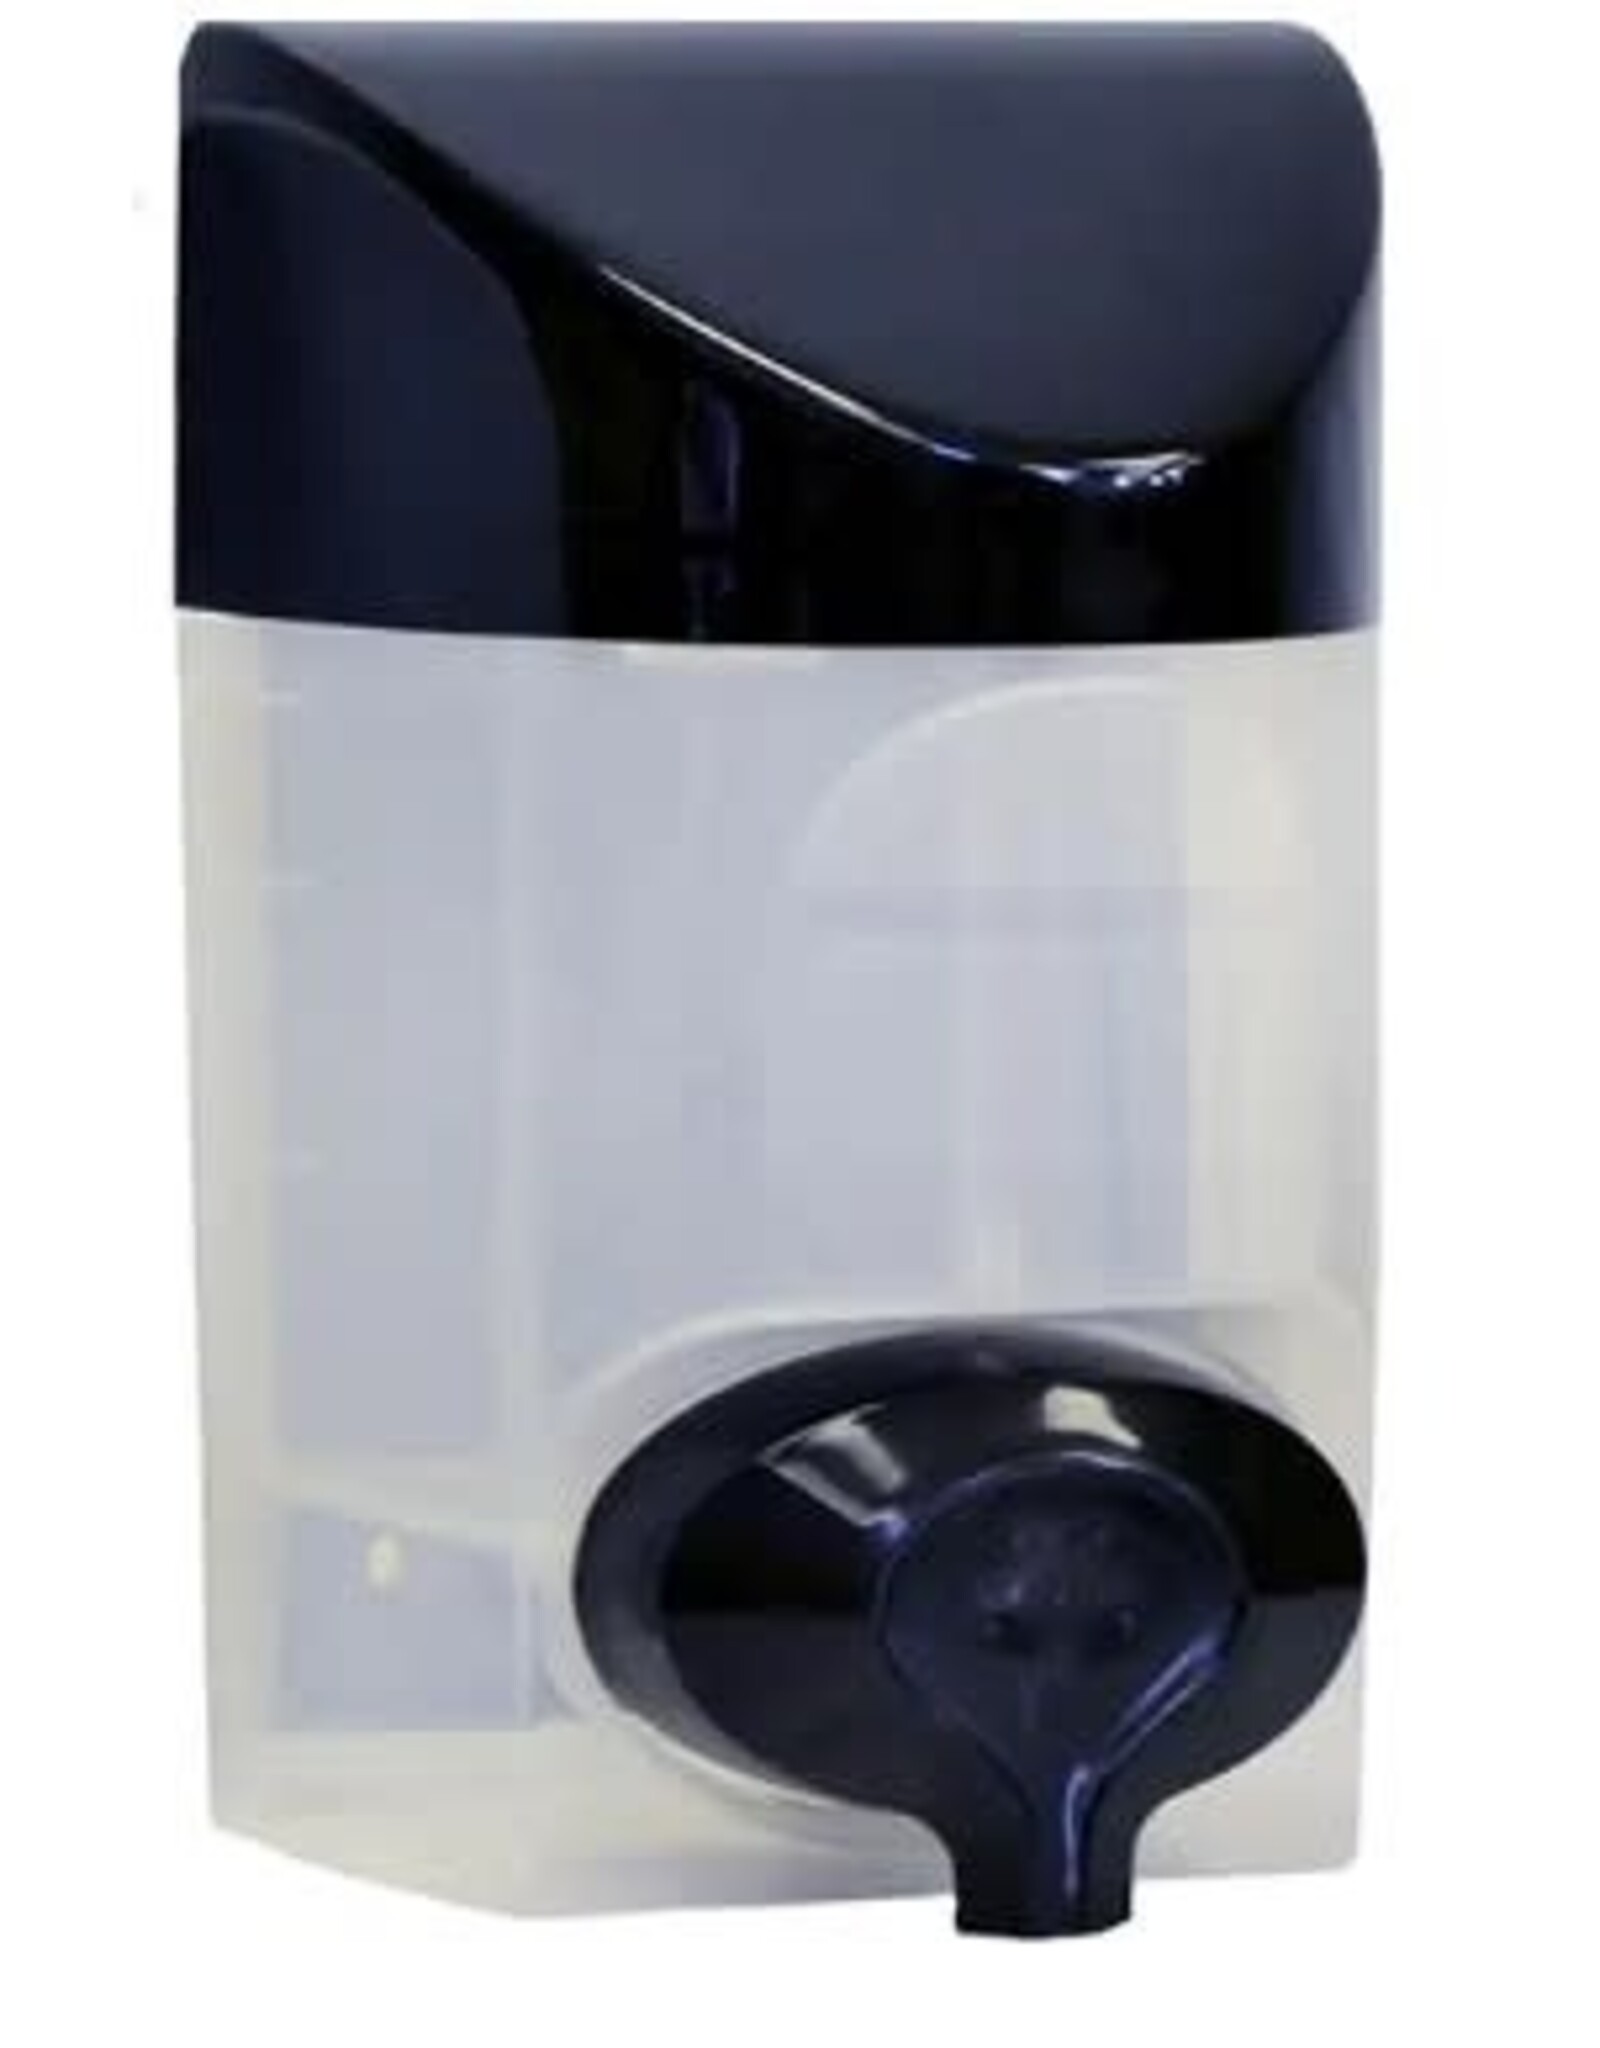 Dustbane Bulk Foaming Soap/Sanitizer Dispenser, Black